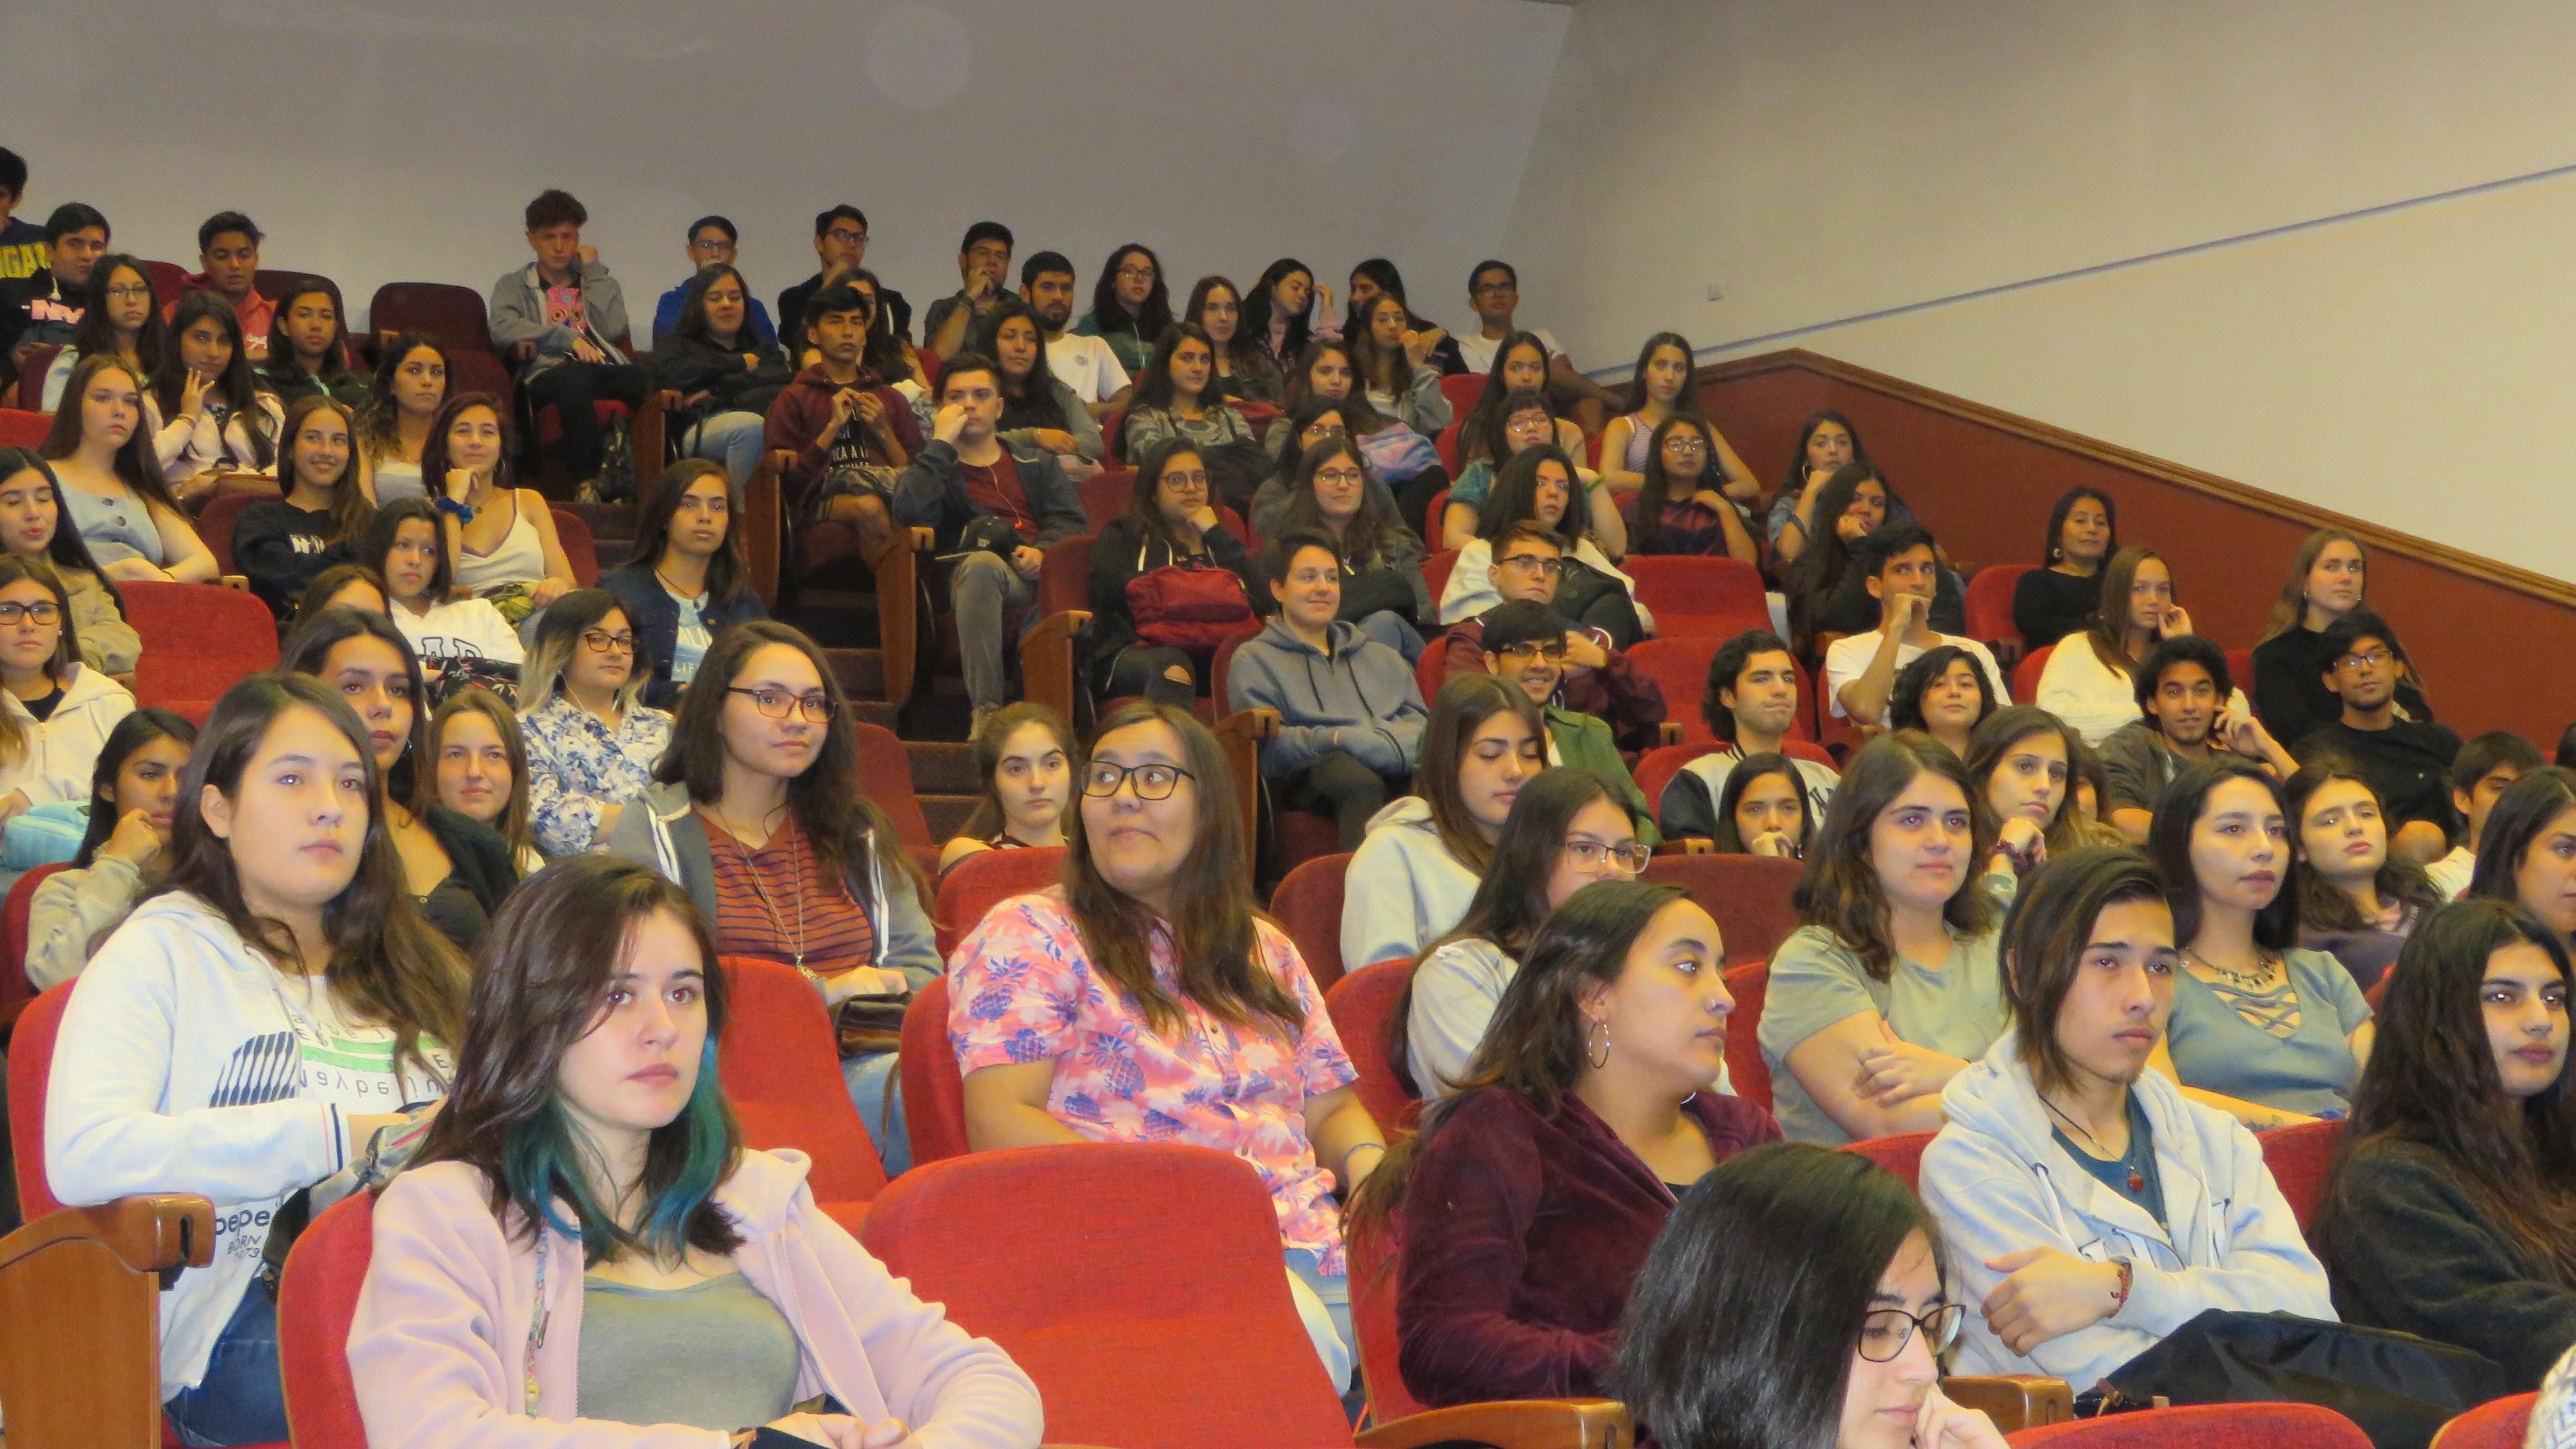 184 fueron los estudiantes seleccionados para la carrera de medicina veterinaria de la Universidad de Chile.